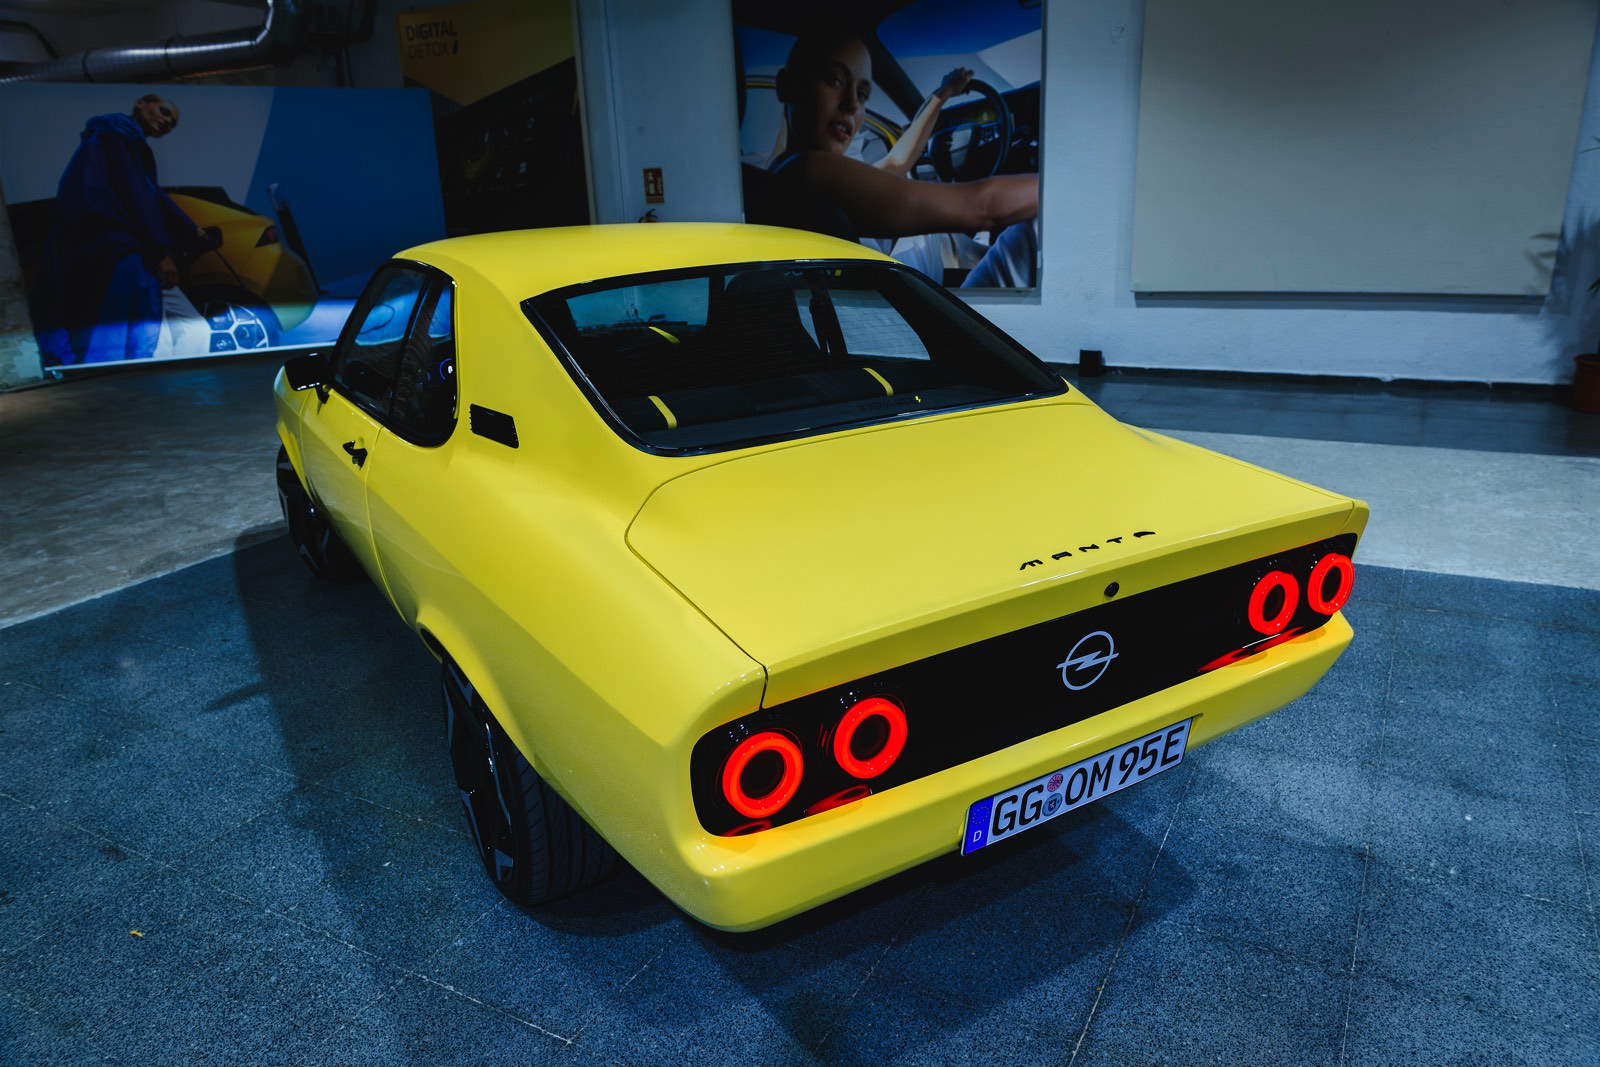 Opel Manta eléctrico